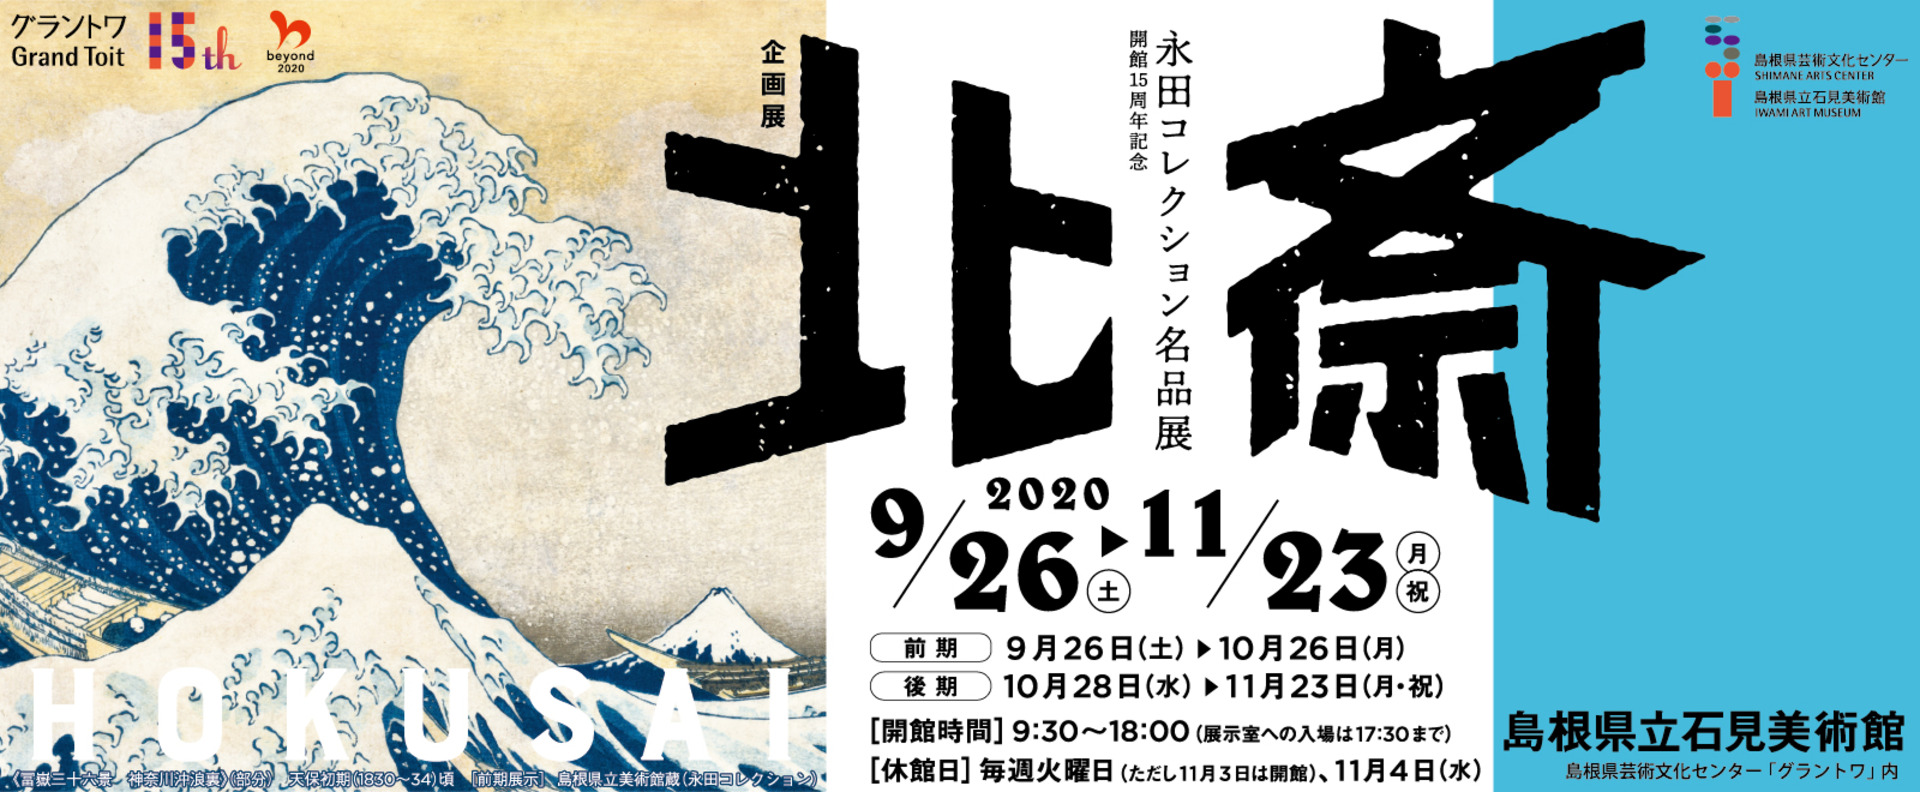 1920x banner hokusai nagata collection